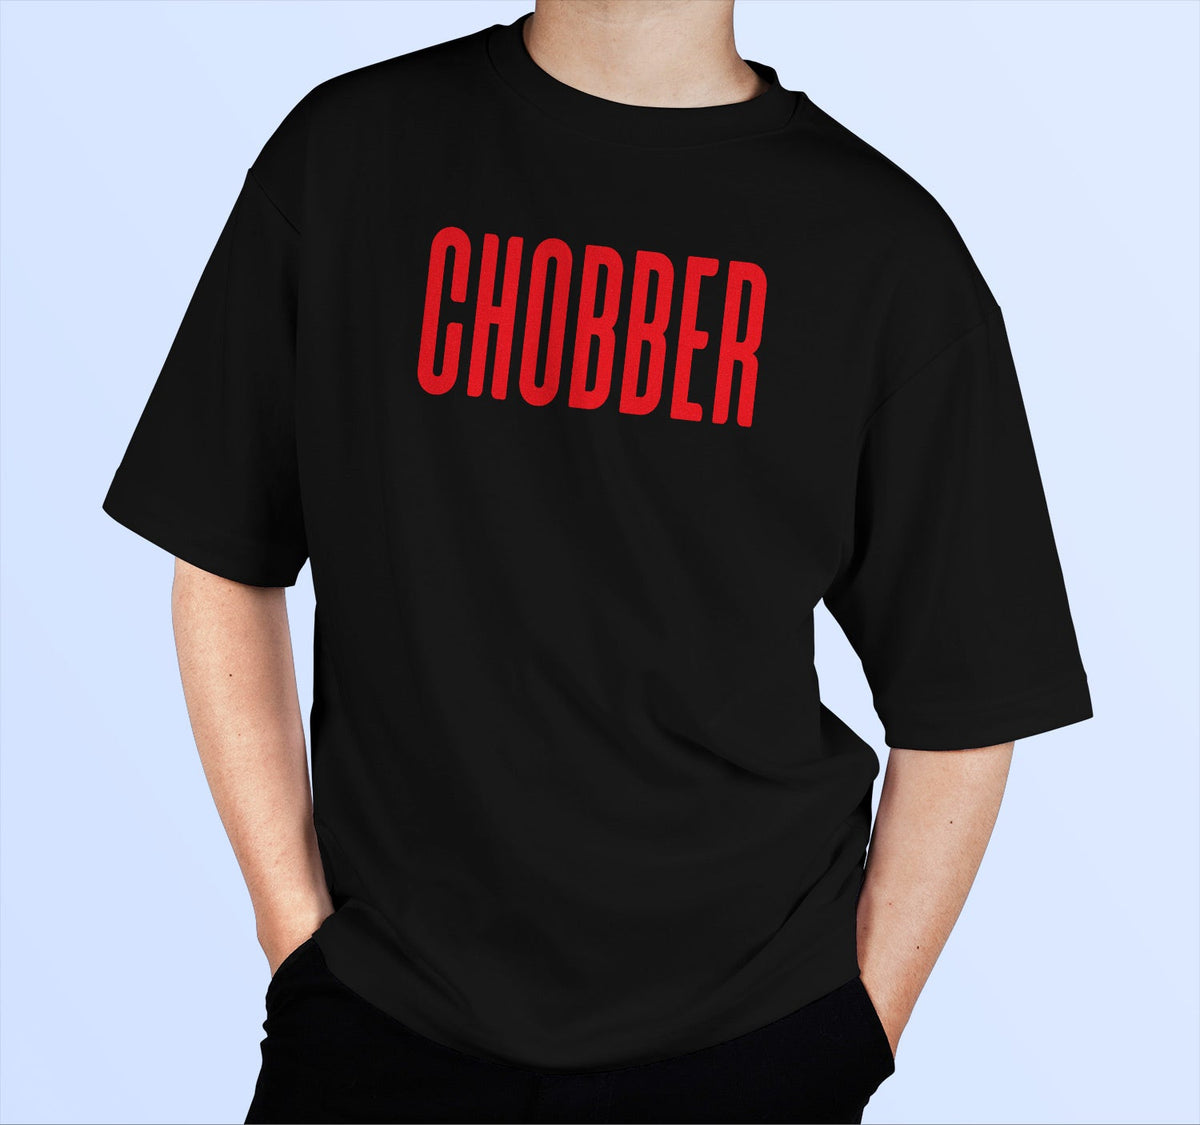 Chobber Oversized T Shirt